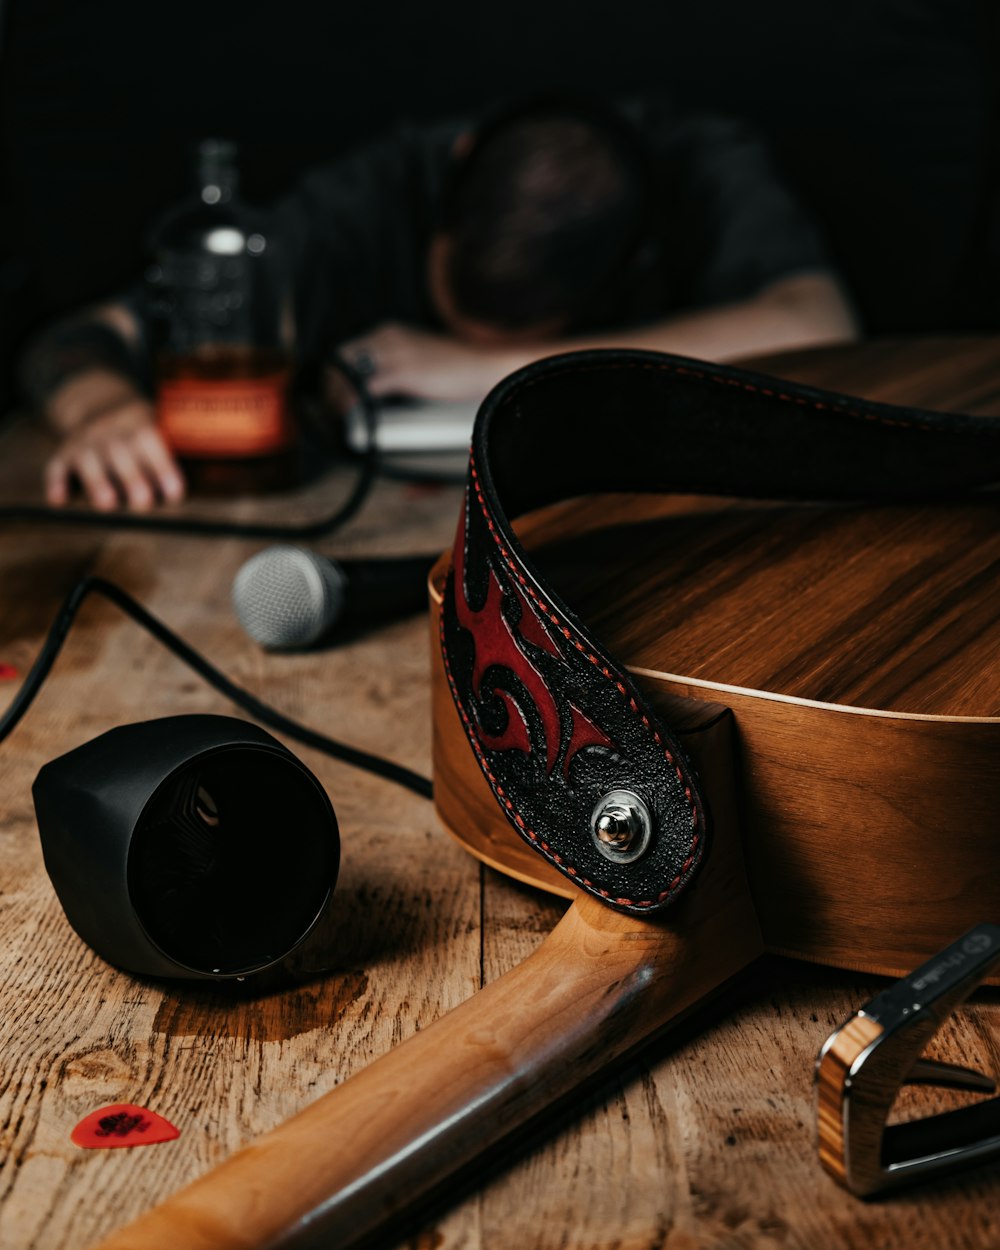 fones de ouvido pretos e vermelhos na mesa de madeira marrom